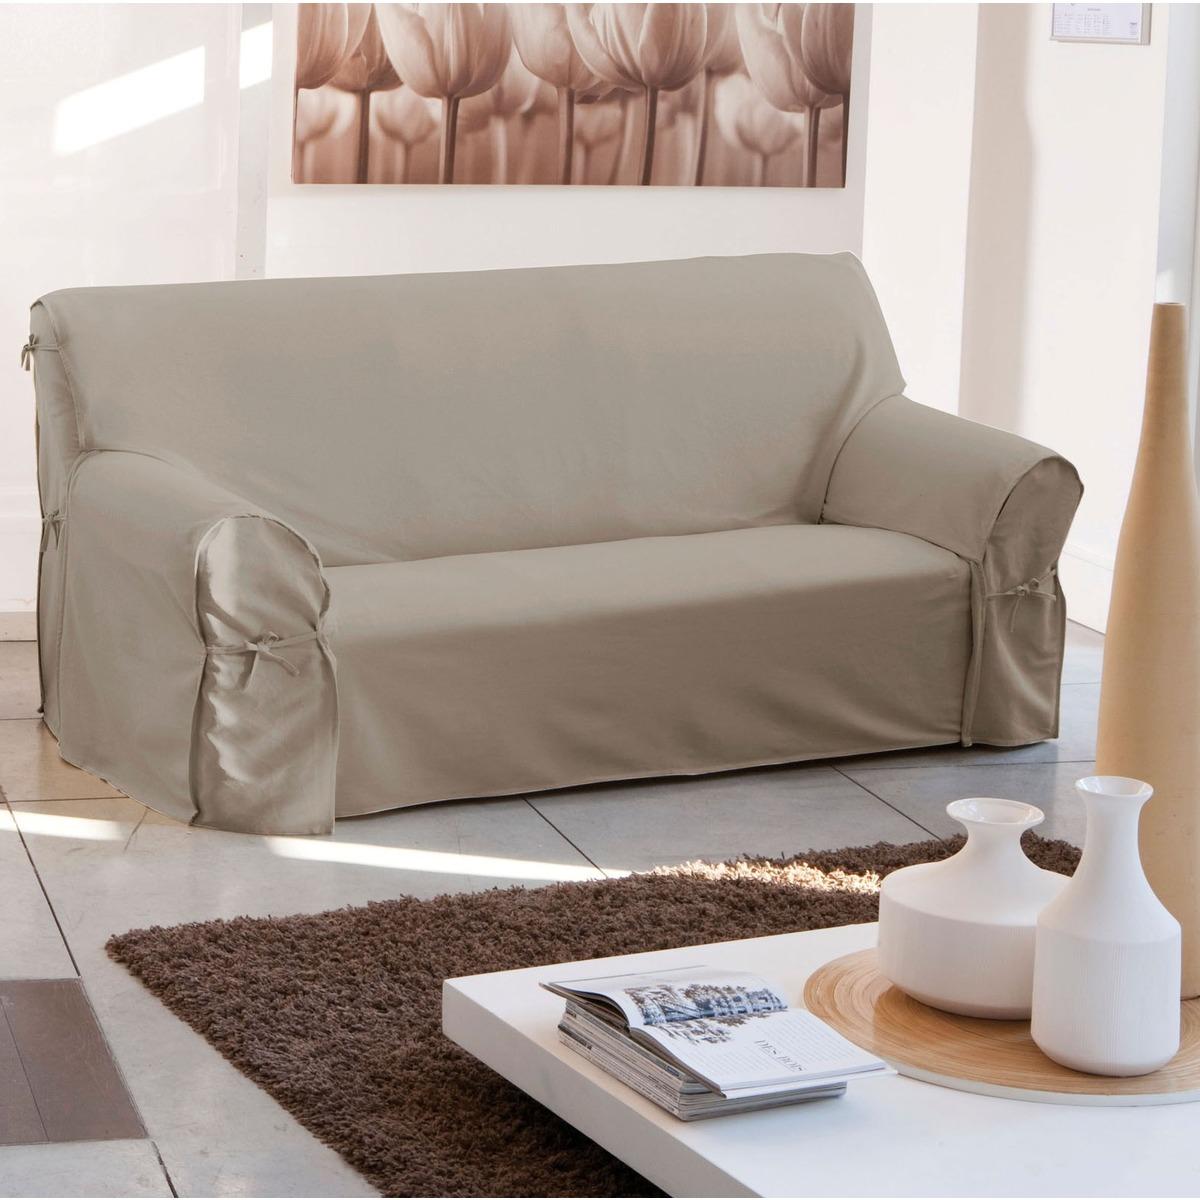 Housse de canapé à nouettes - 205 x 90 x 60 cm - Blanc